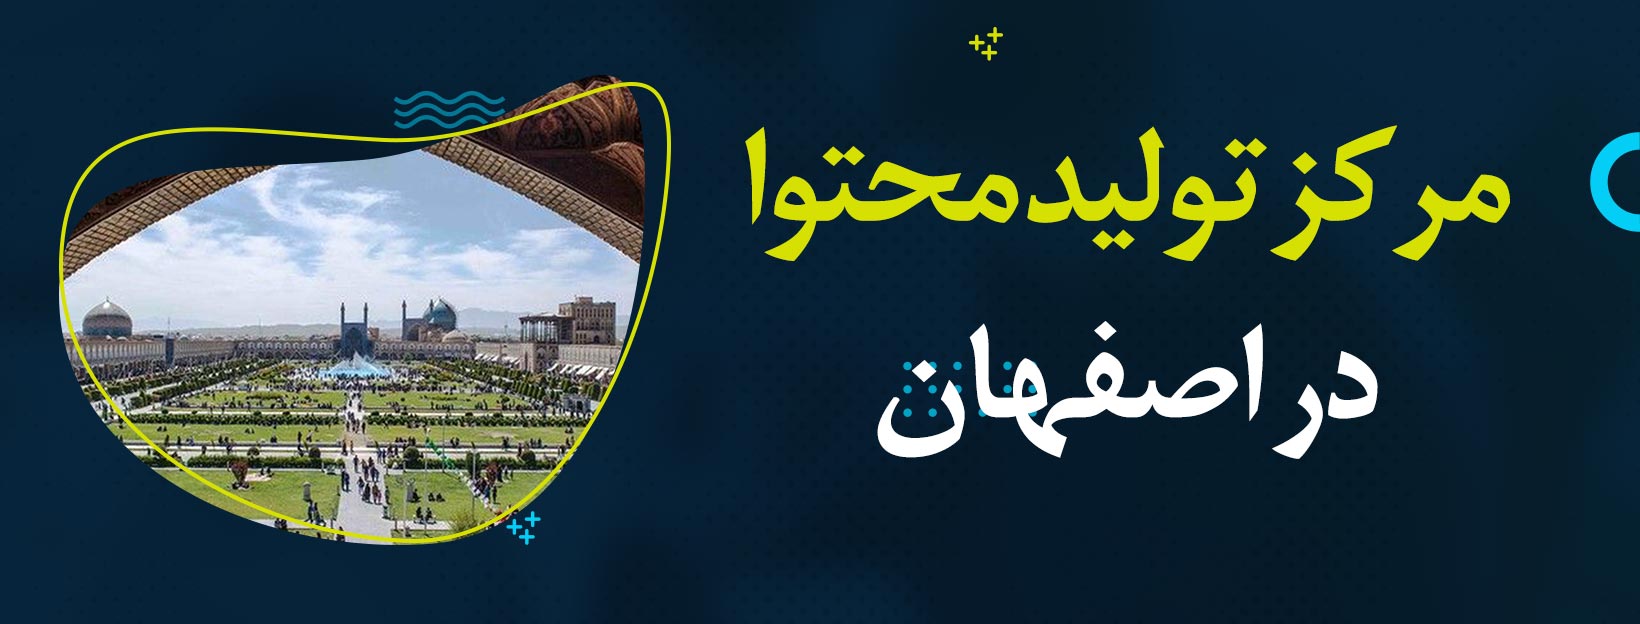 تولید محتوای سئو شده در اصفهان - سئو محتوا